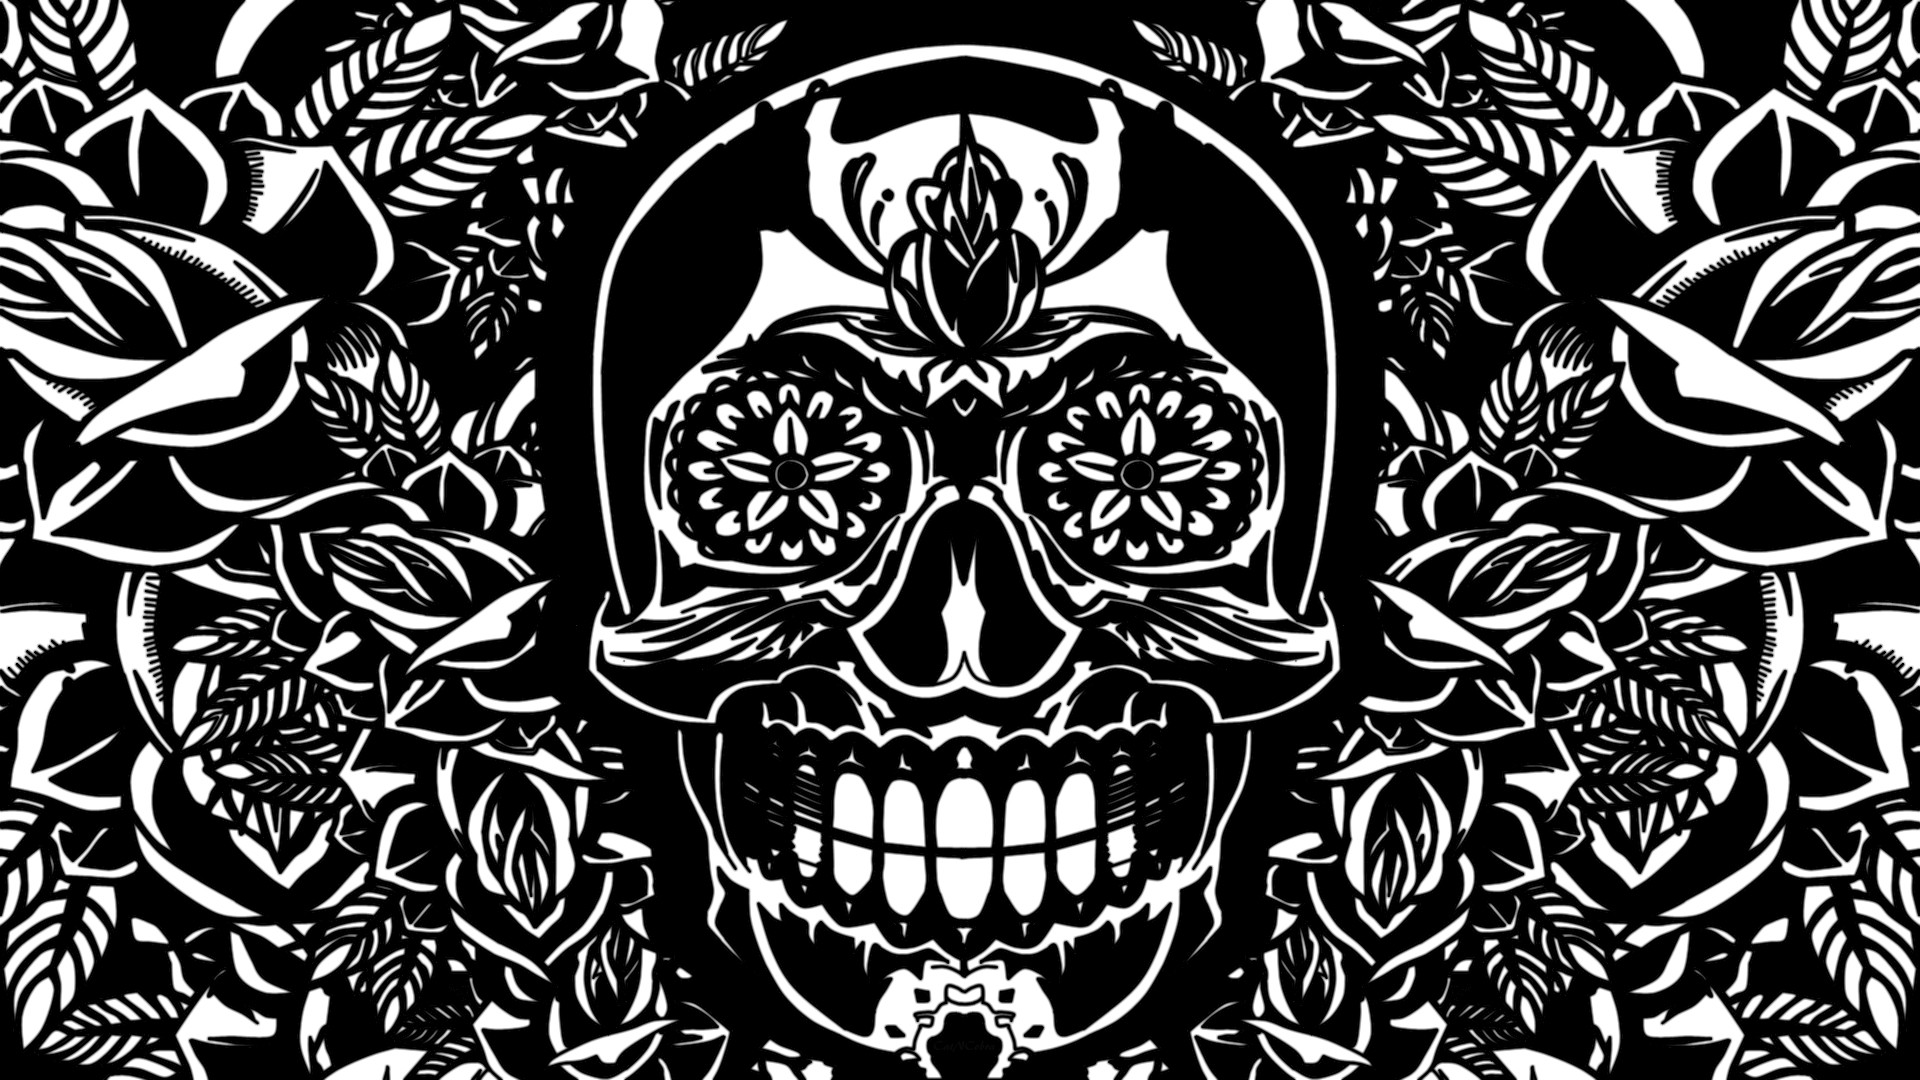 1920x1080 ... Osiris Skull Desktop Wallpaper by CatNCobra on DeviantArt ...